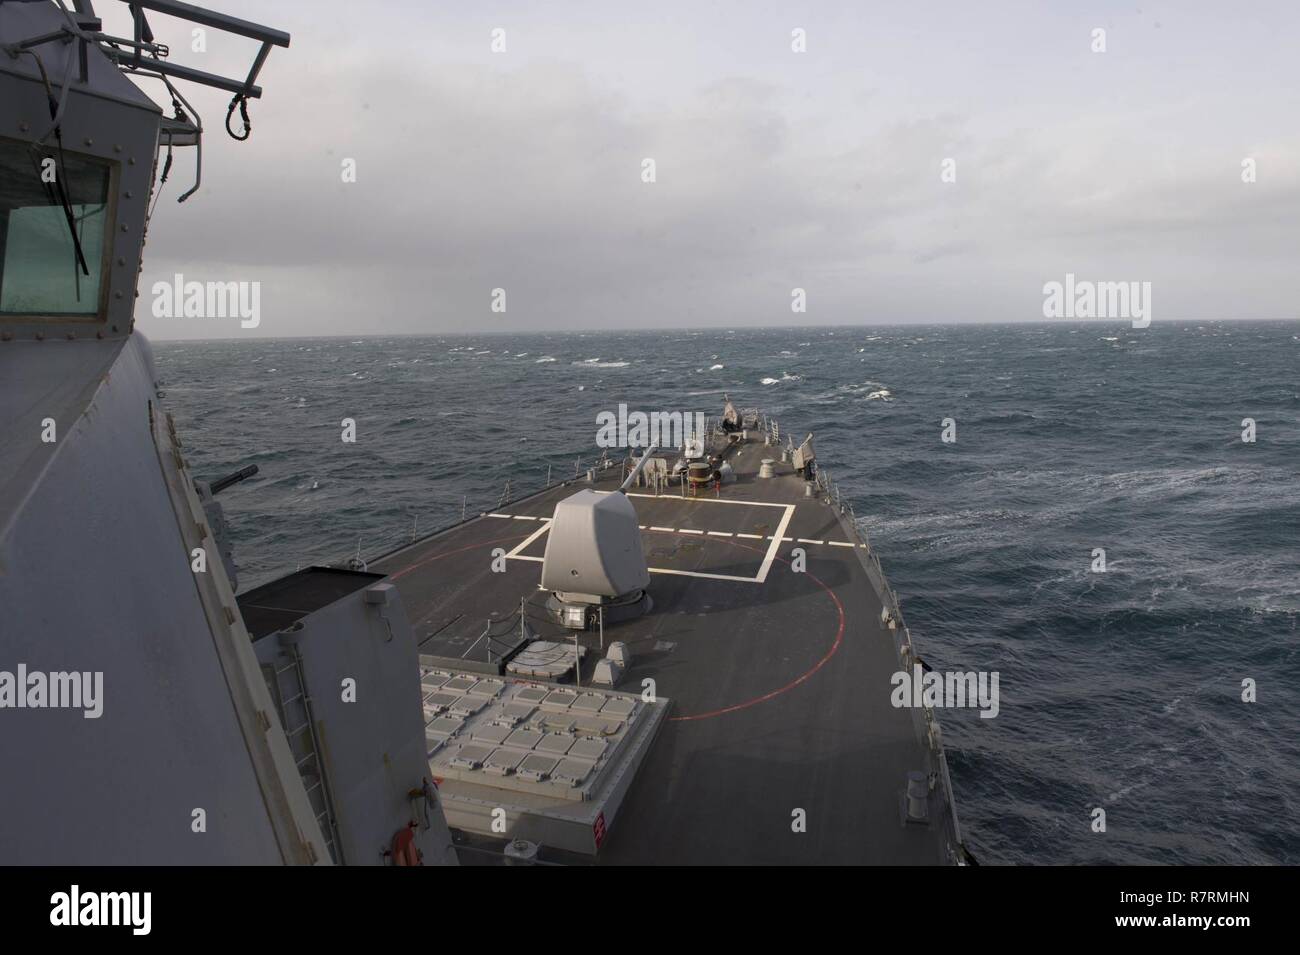 Océano Atlántico- (4 de abril de 2017) - El USS Carney (DDG 64) cruceros a través del Océano Atlántico durante el ejercicio Joint Warrior 17-1 del 4 de abril, 2017. Carney, un Arleigh Burke clase destructor de misiles guiados, desplegadas a Rota, España, está realizando su tercera patrulla en los EE.UU. 6ª Flota de la zona de operaciones en apoyo de los intereses de seguridad nacional de EE.UU. en Europa. Foto de stock